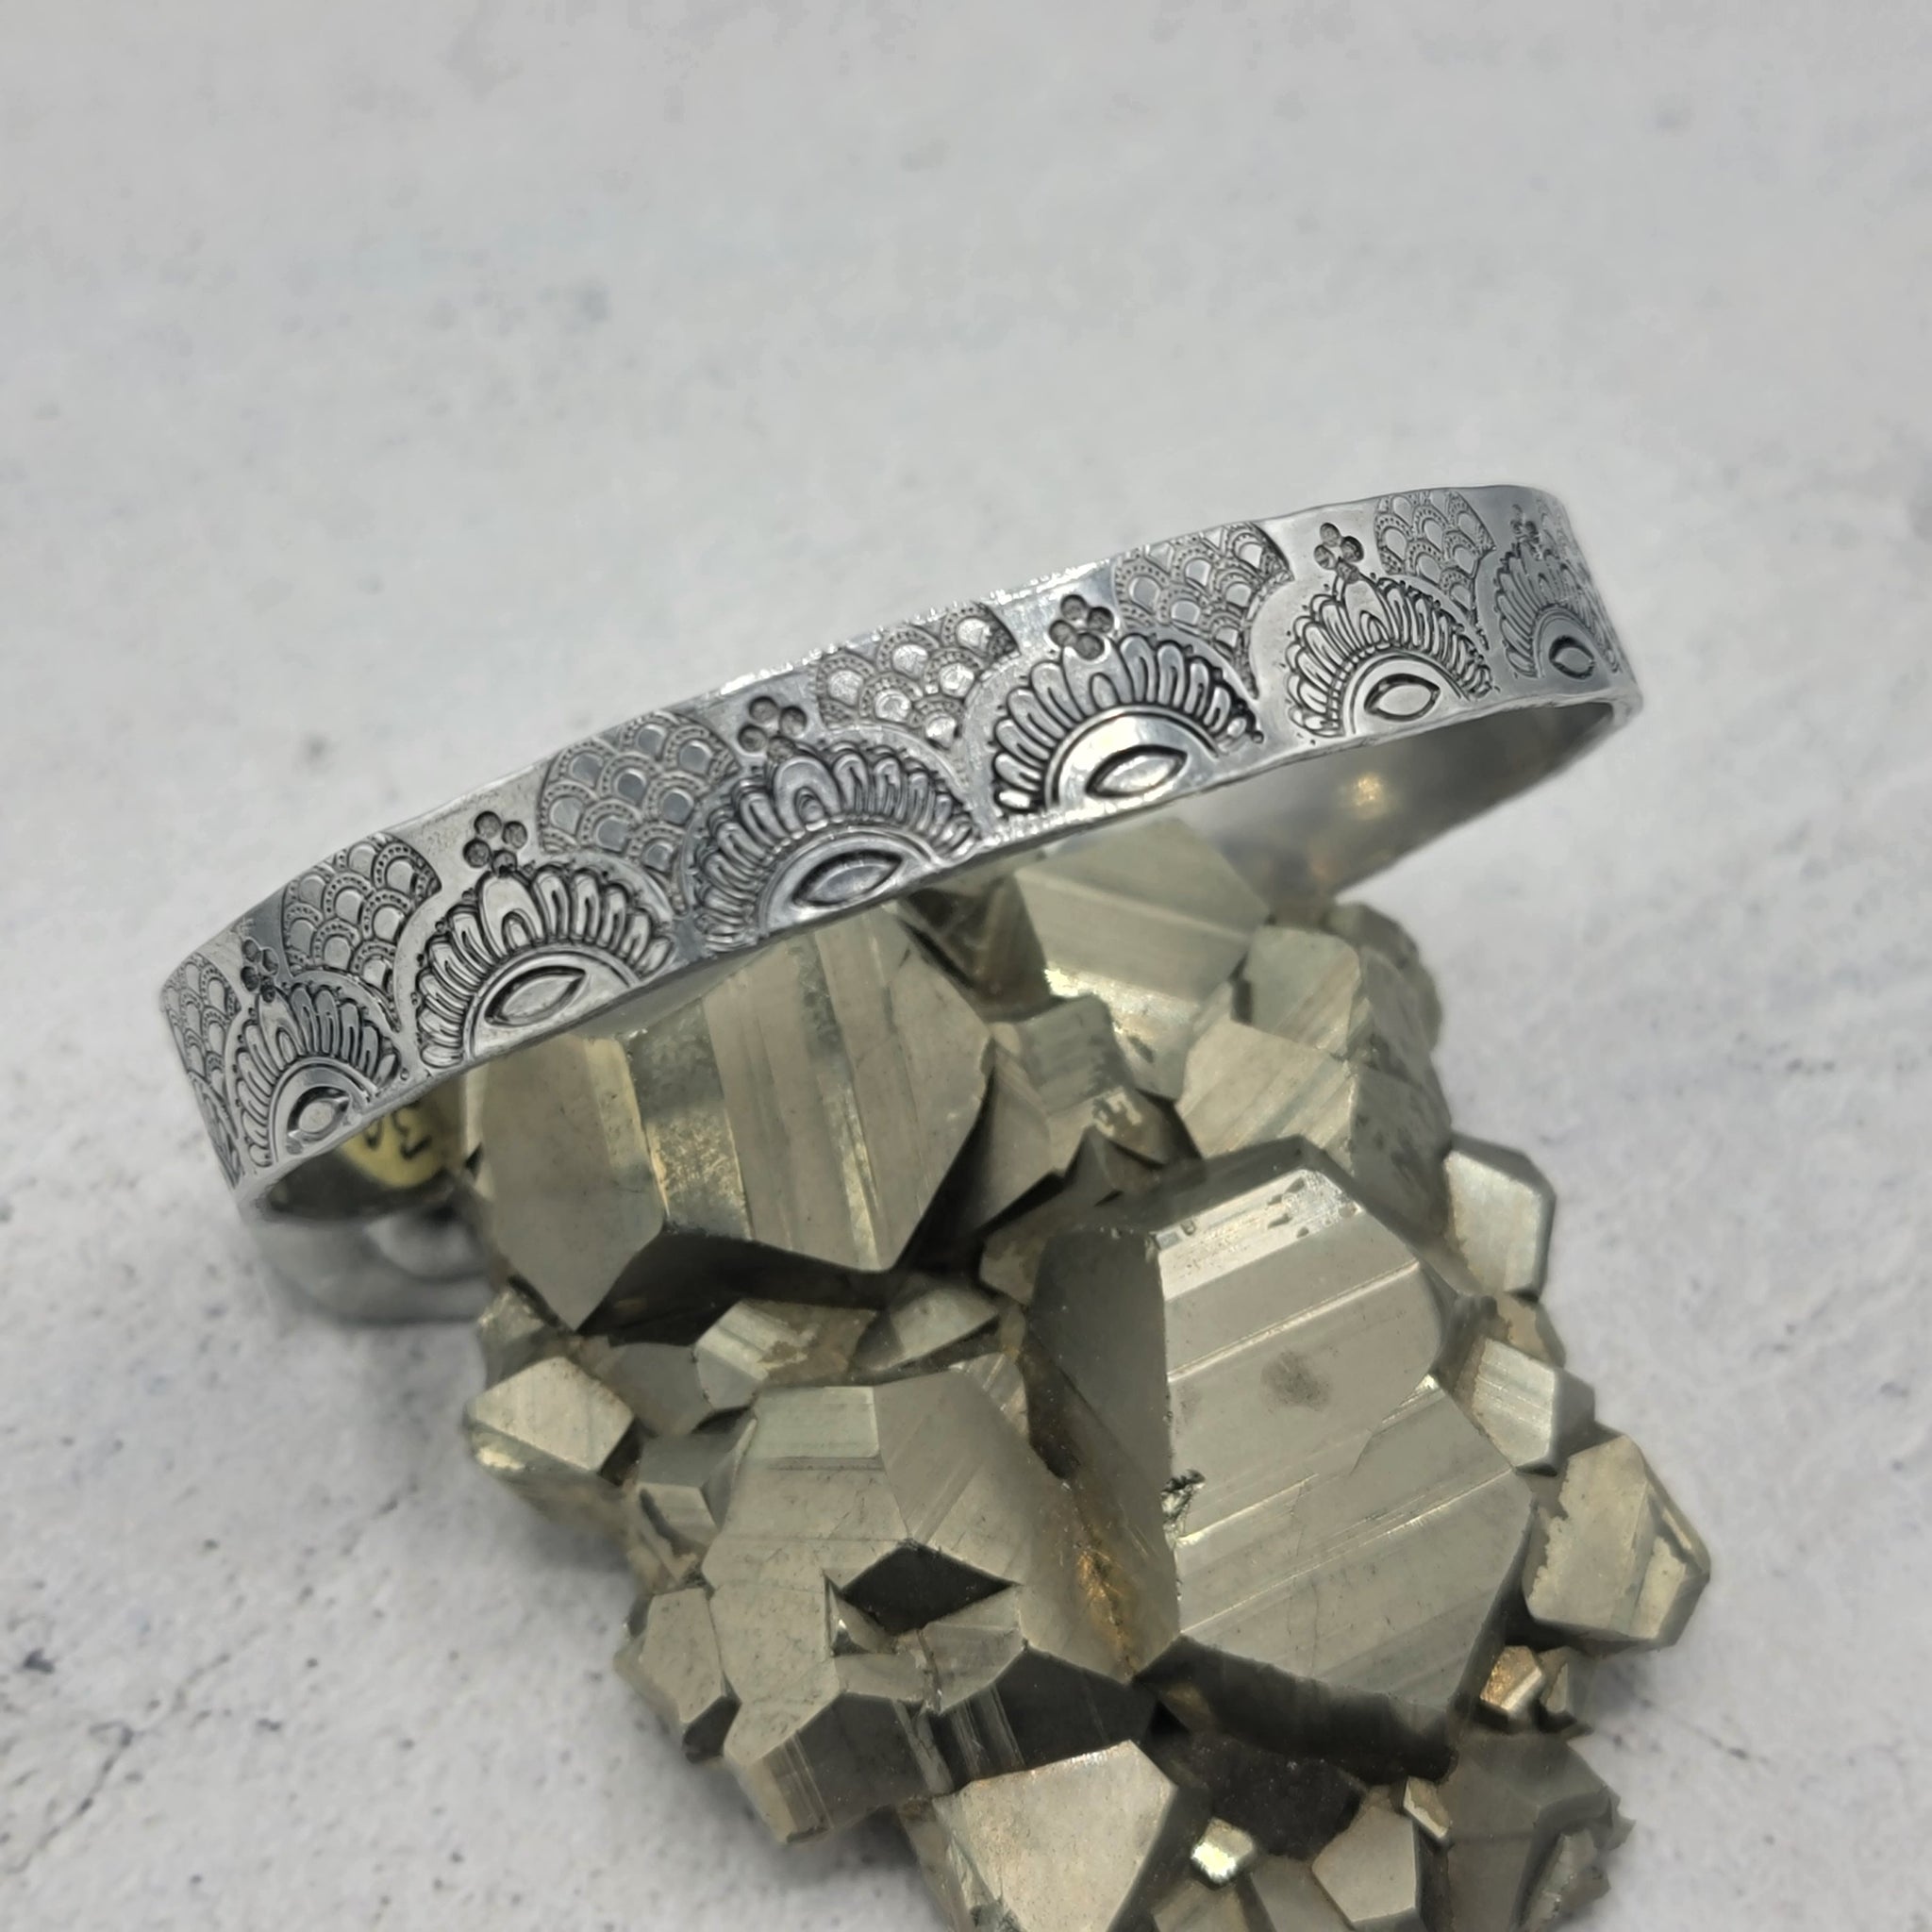 Handstamped Aluminum Cuff Bracelets